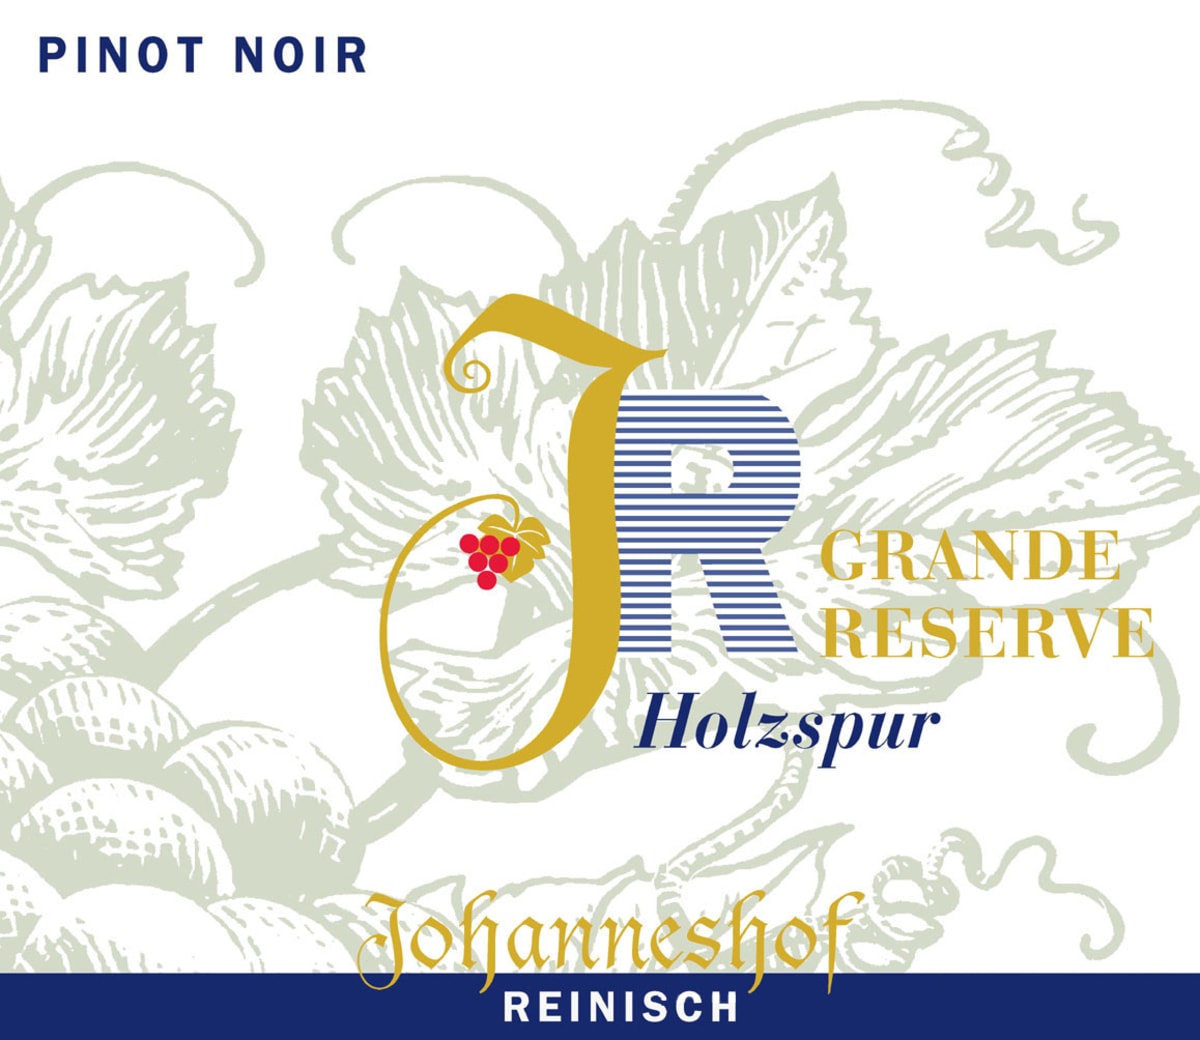 Johanneshof Reinisch Holzspur Grand Reserve Pinot Noir 2006 Front Label